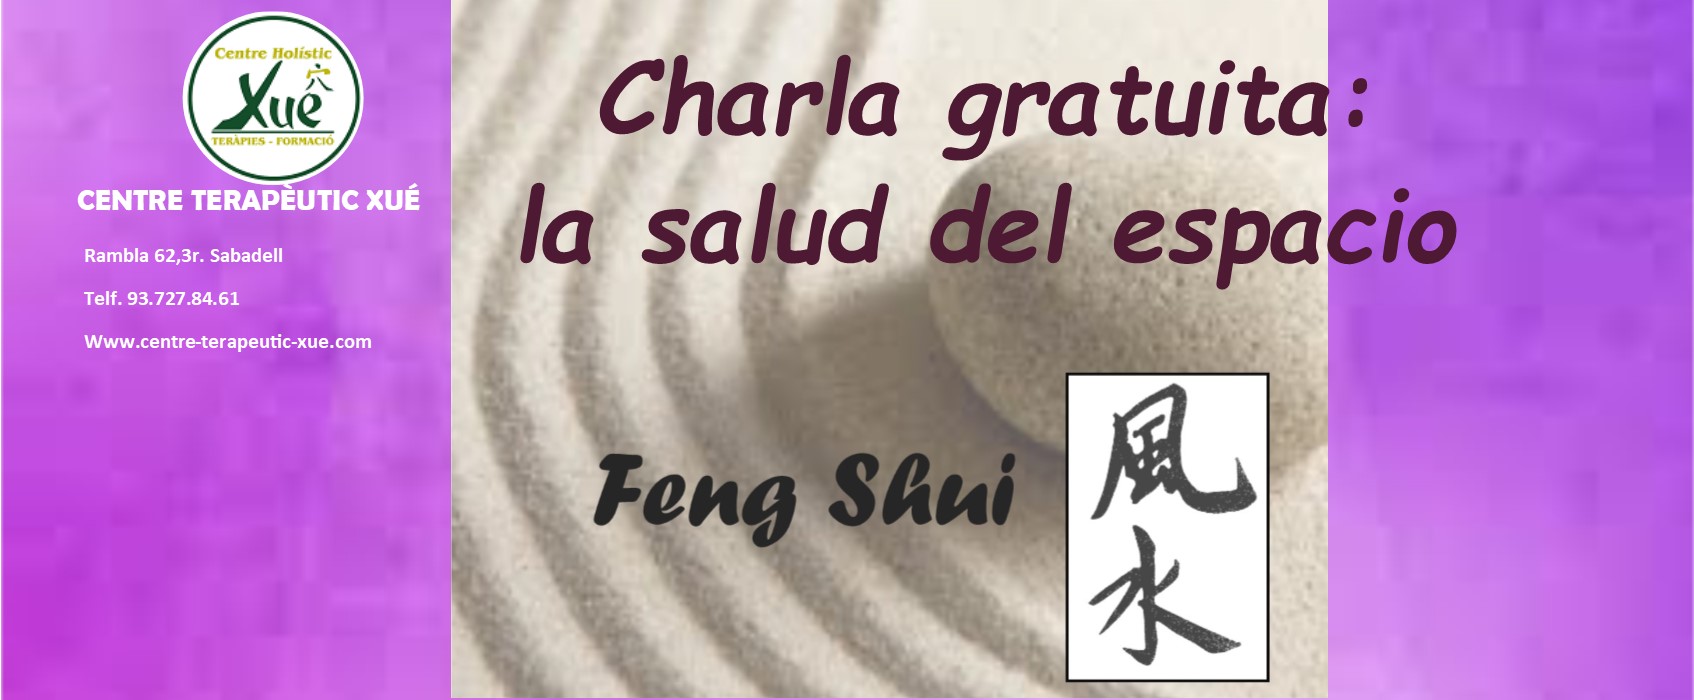 charla gratuita feng shui